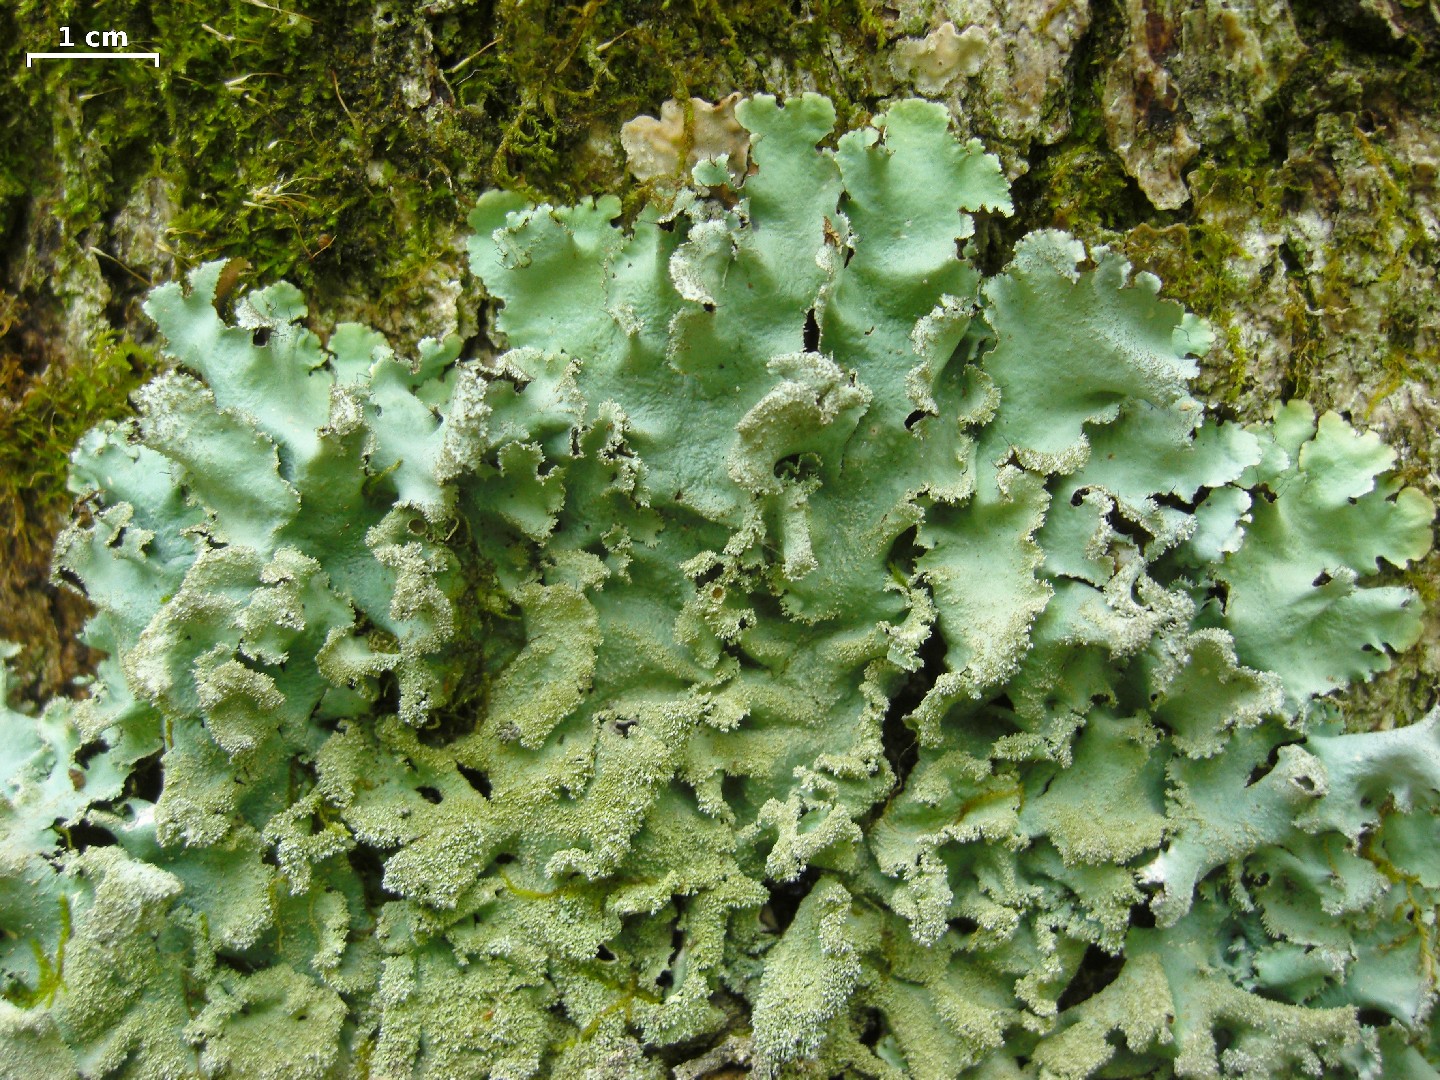 Parmotrema lichen (Parmotrema crinitum)